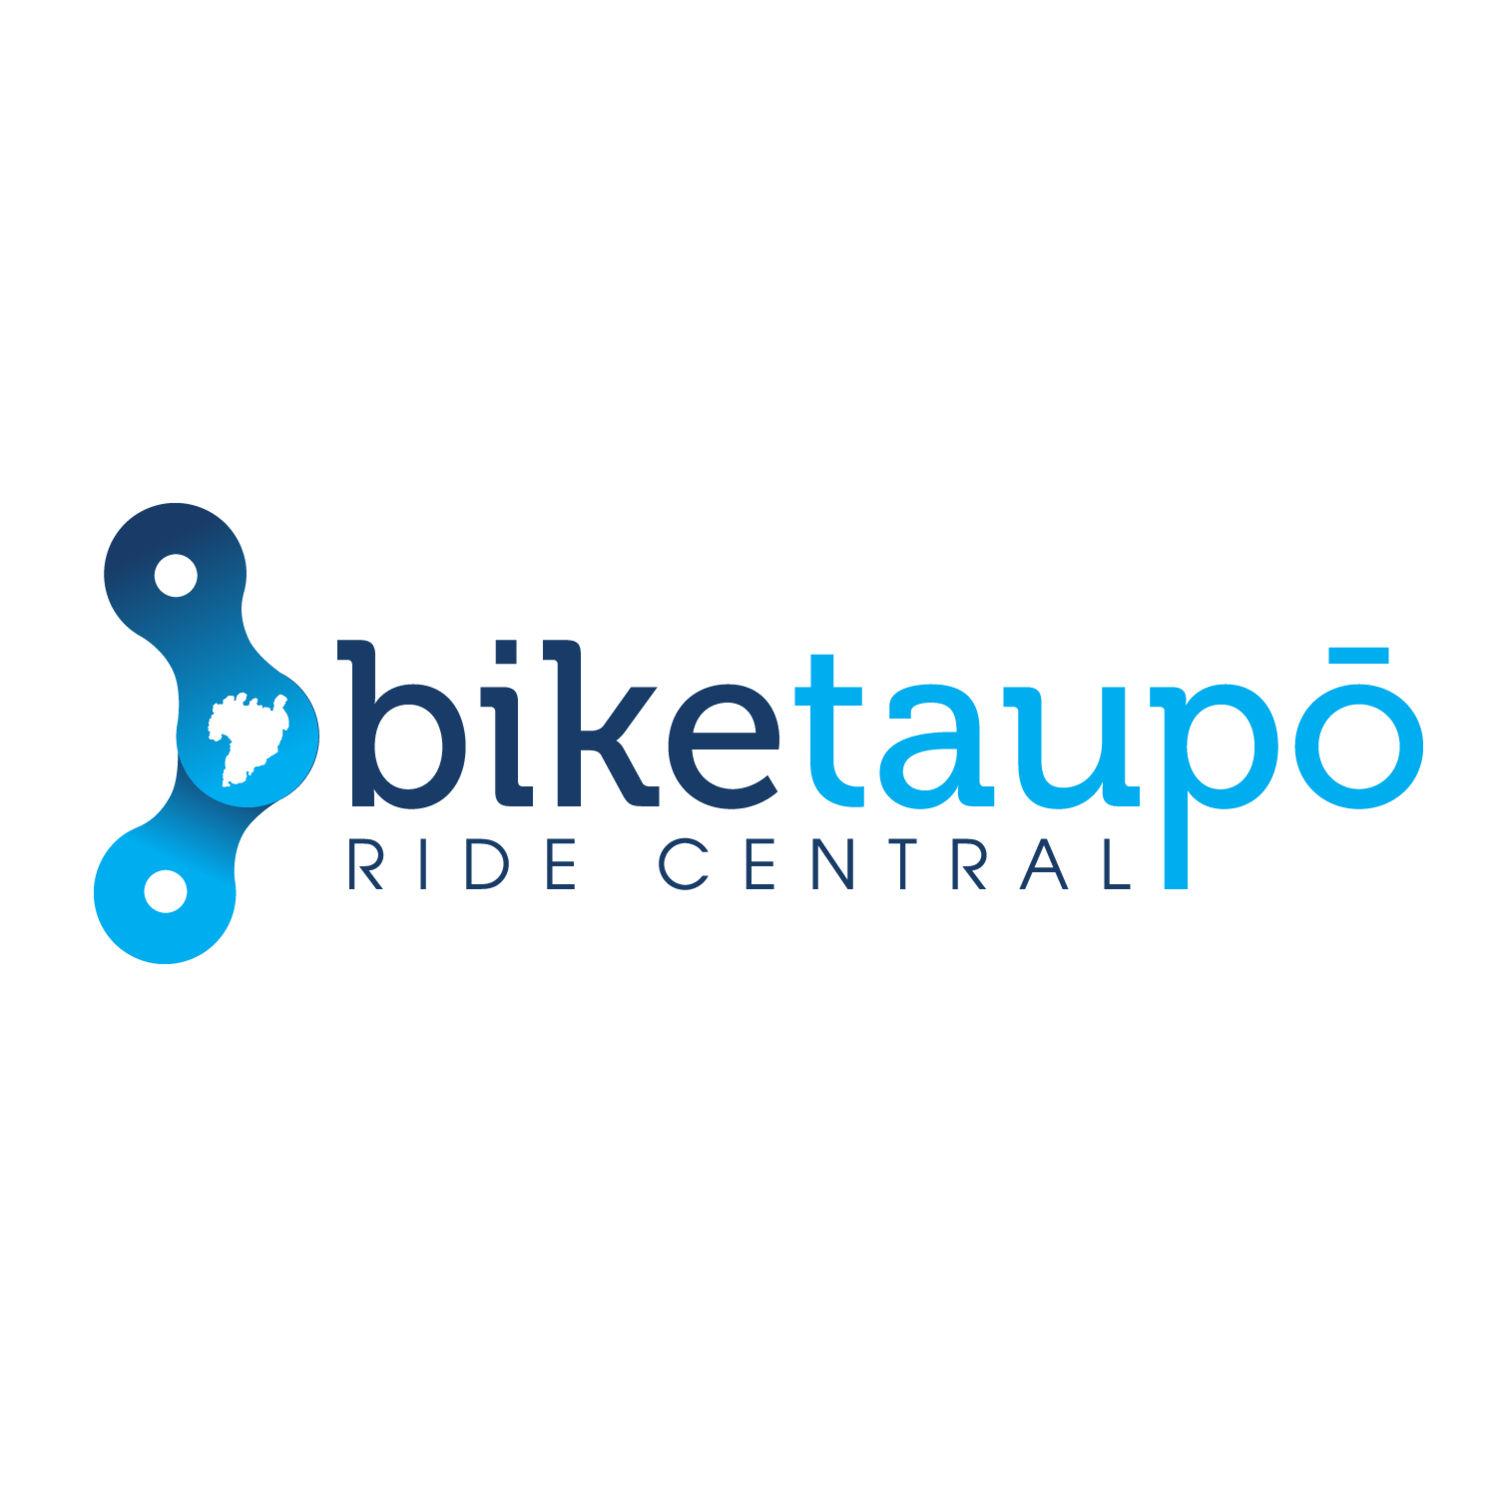 Bike Taupo